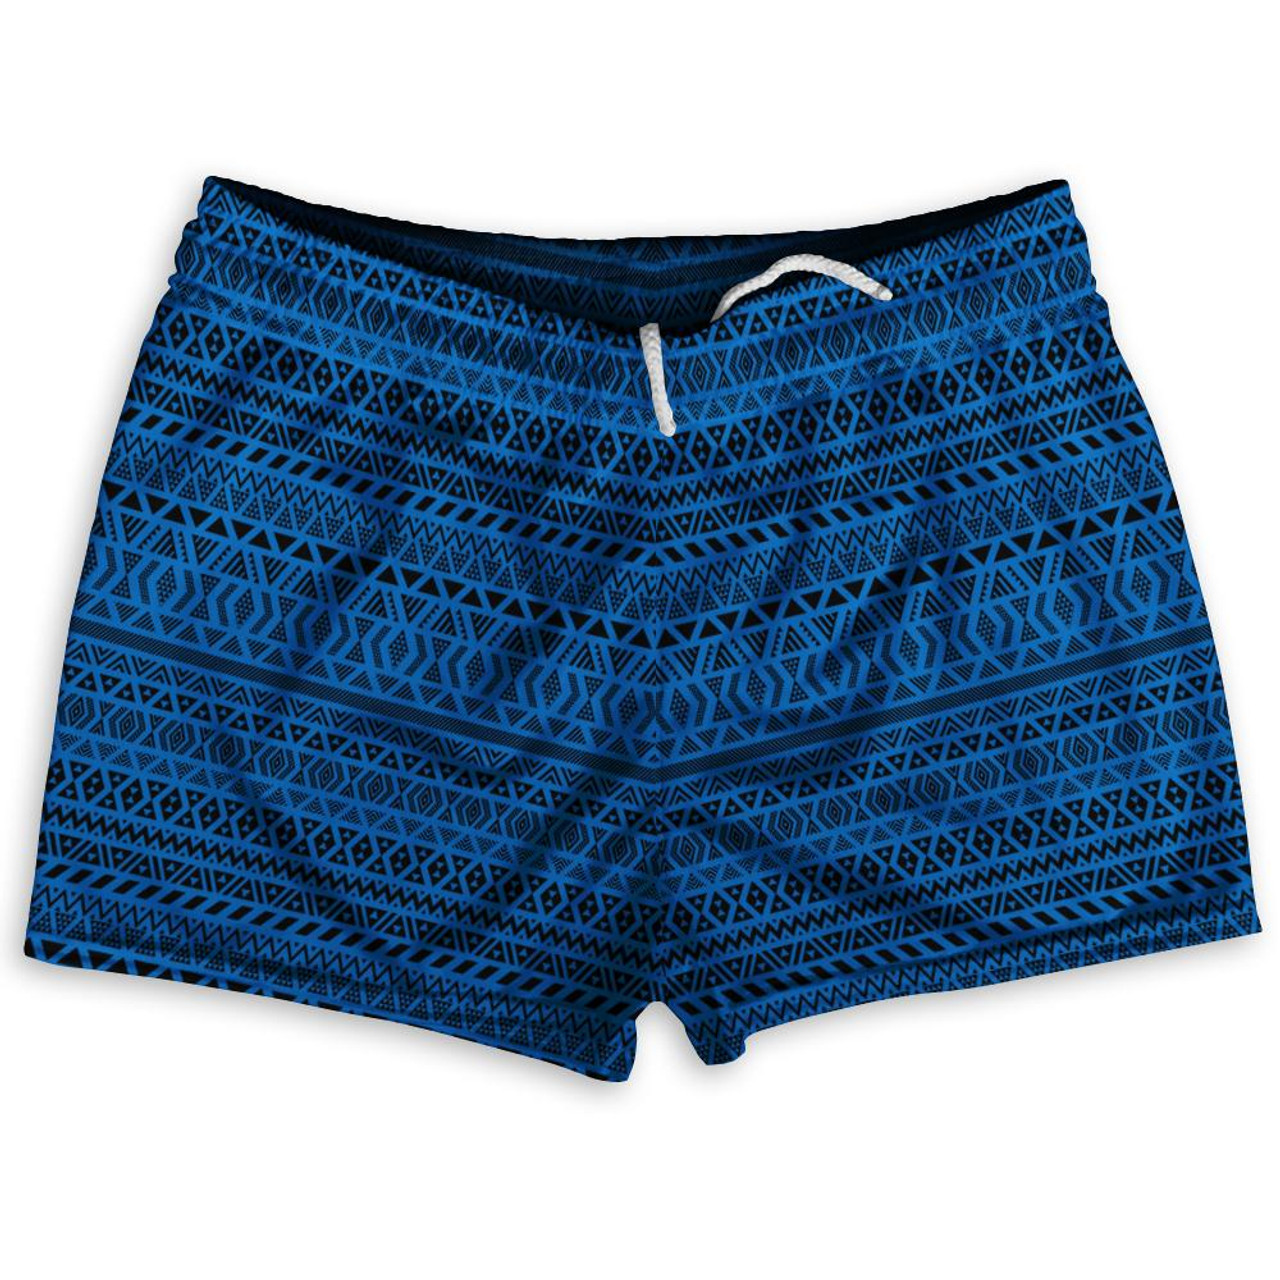 Maori Athletic Shorts Shorty Short Gym Shorts 2.5